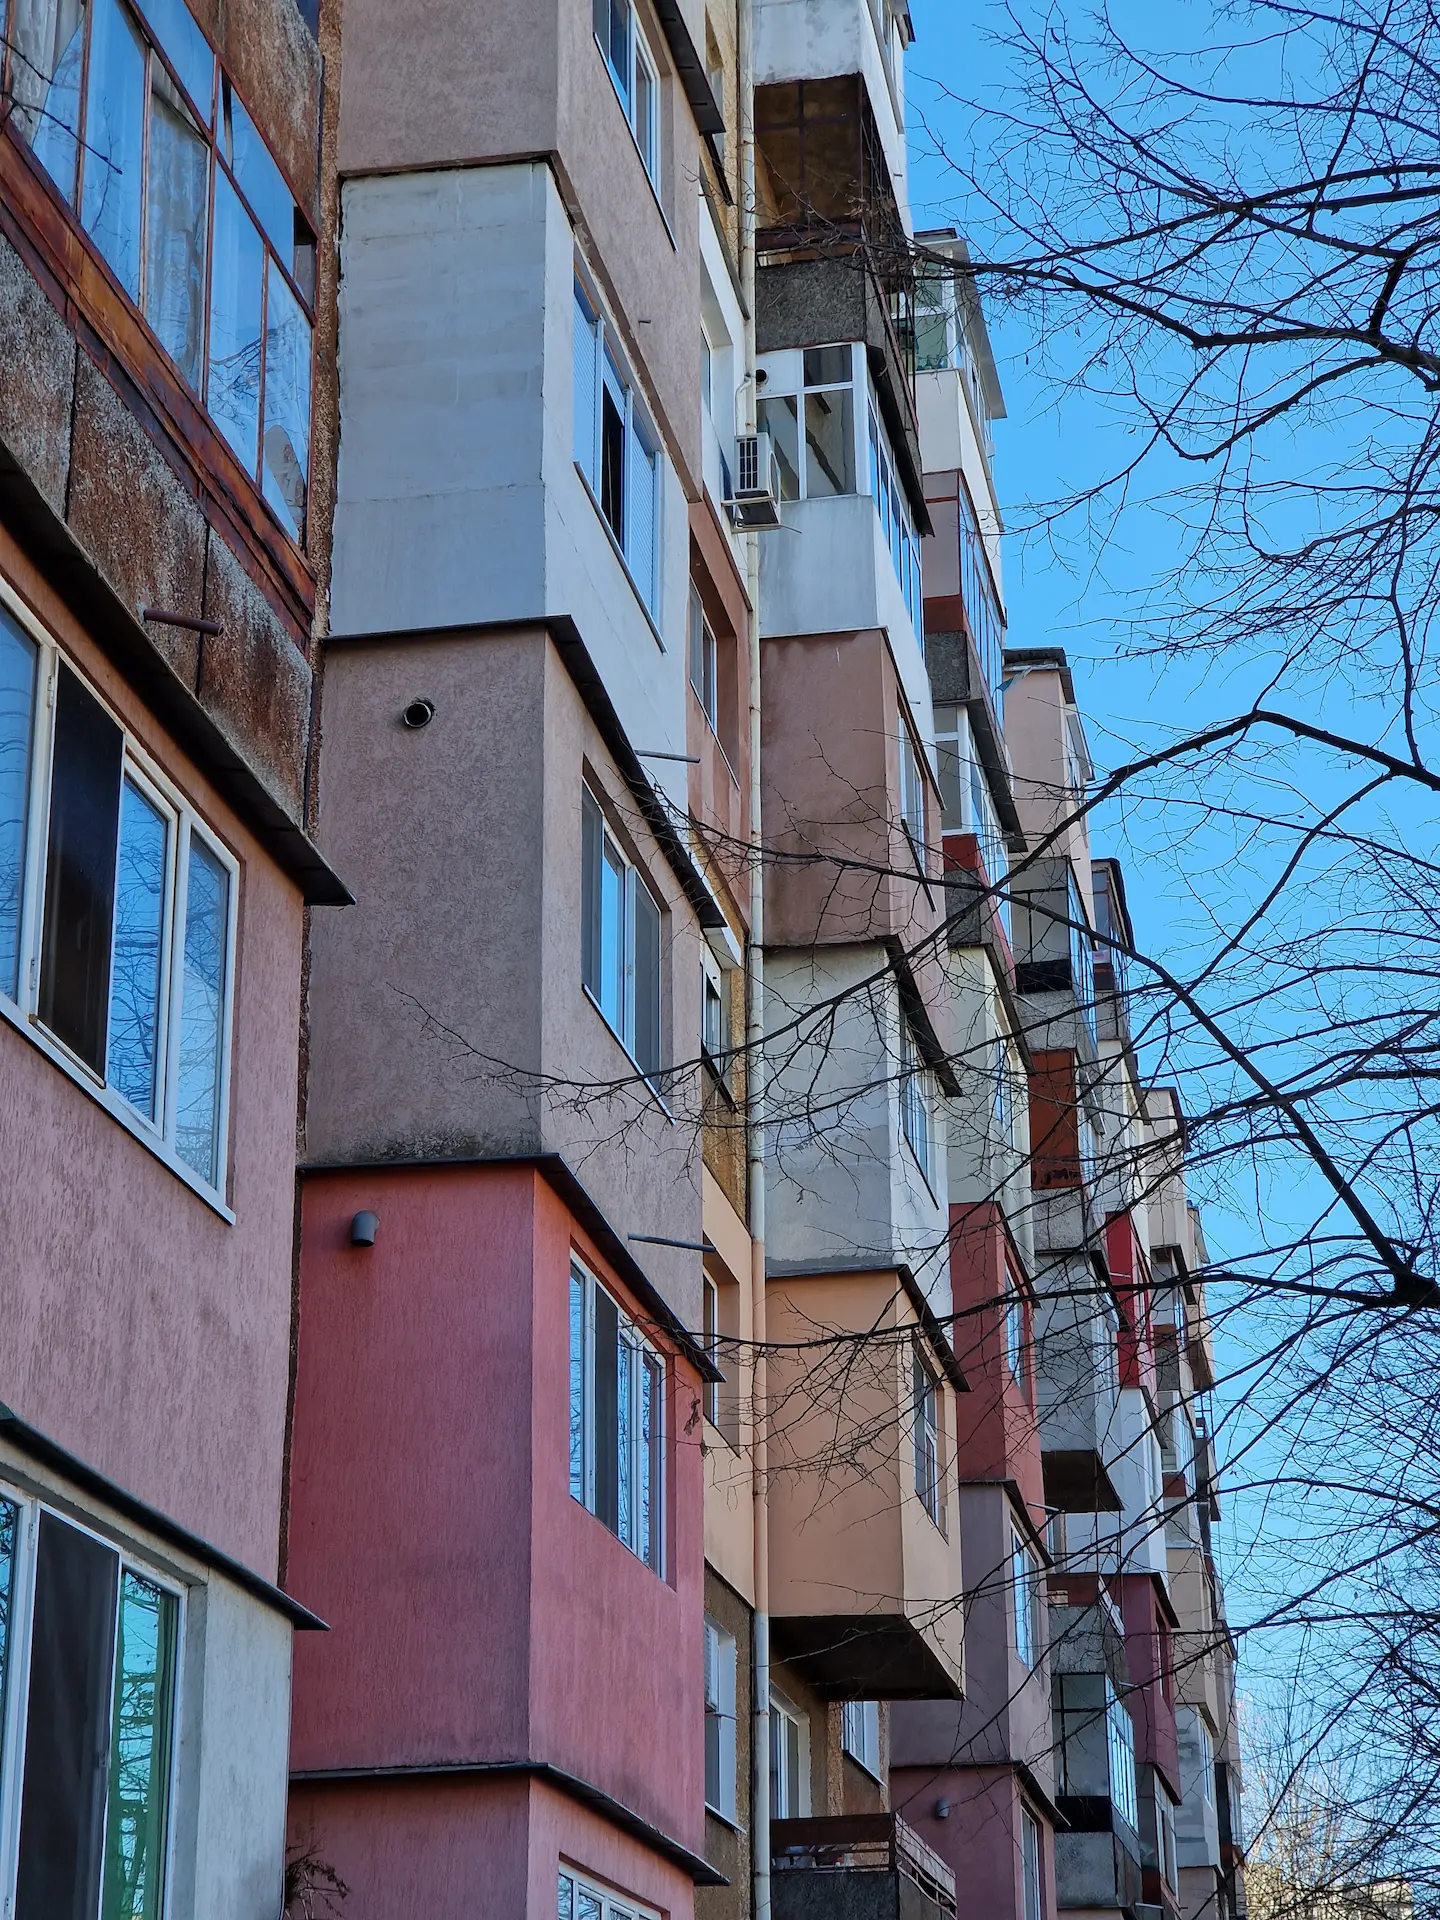 La façade d'un immeuble de béton avec des couleurs ternes, orange rouge brun.